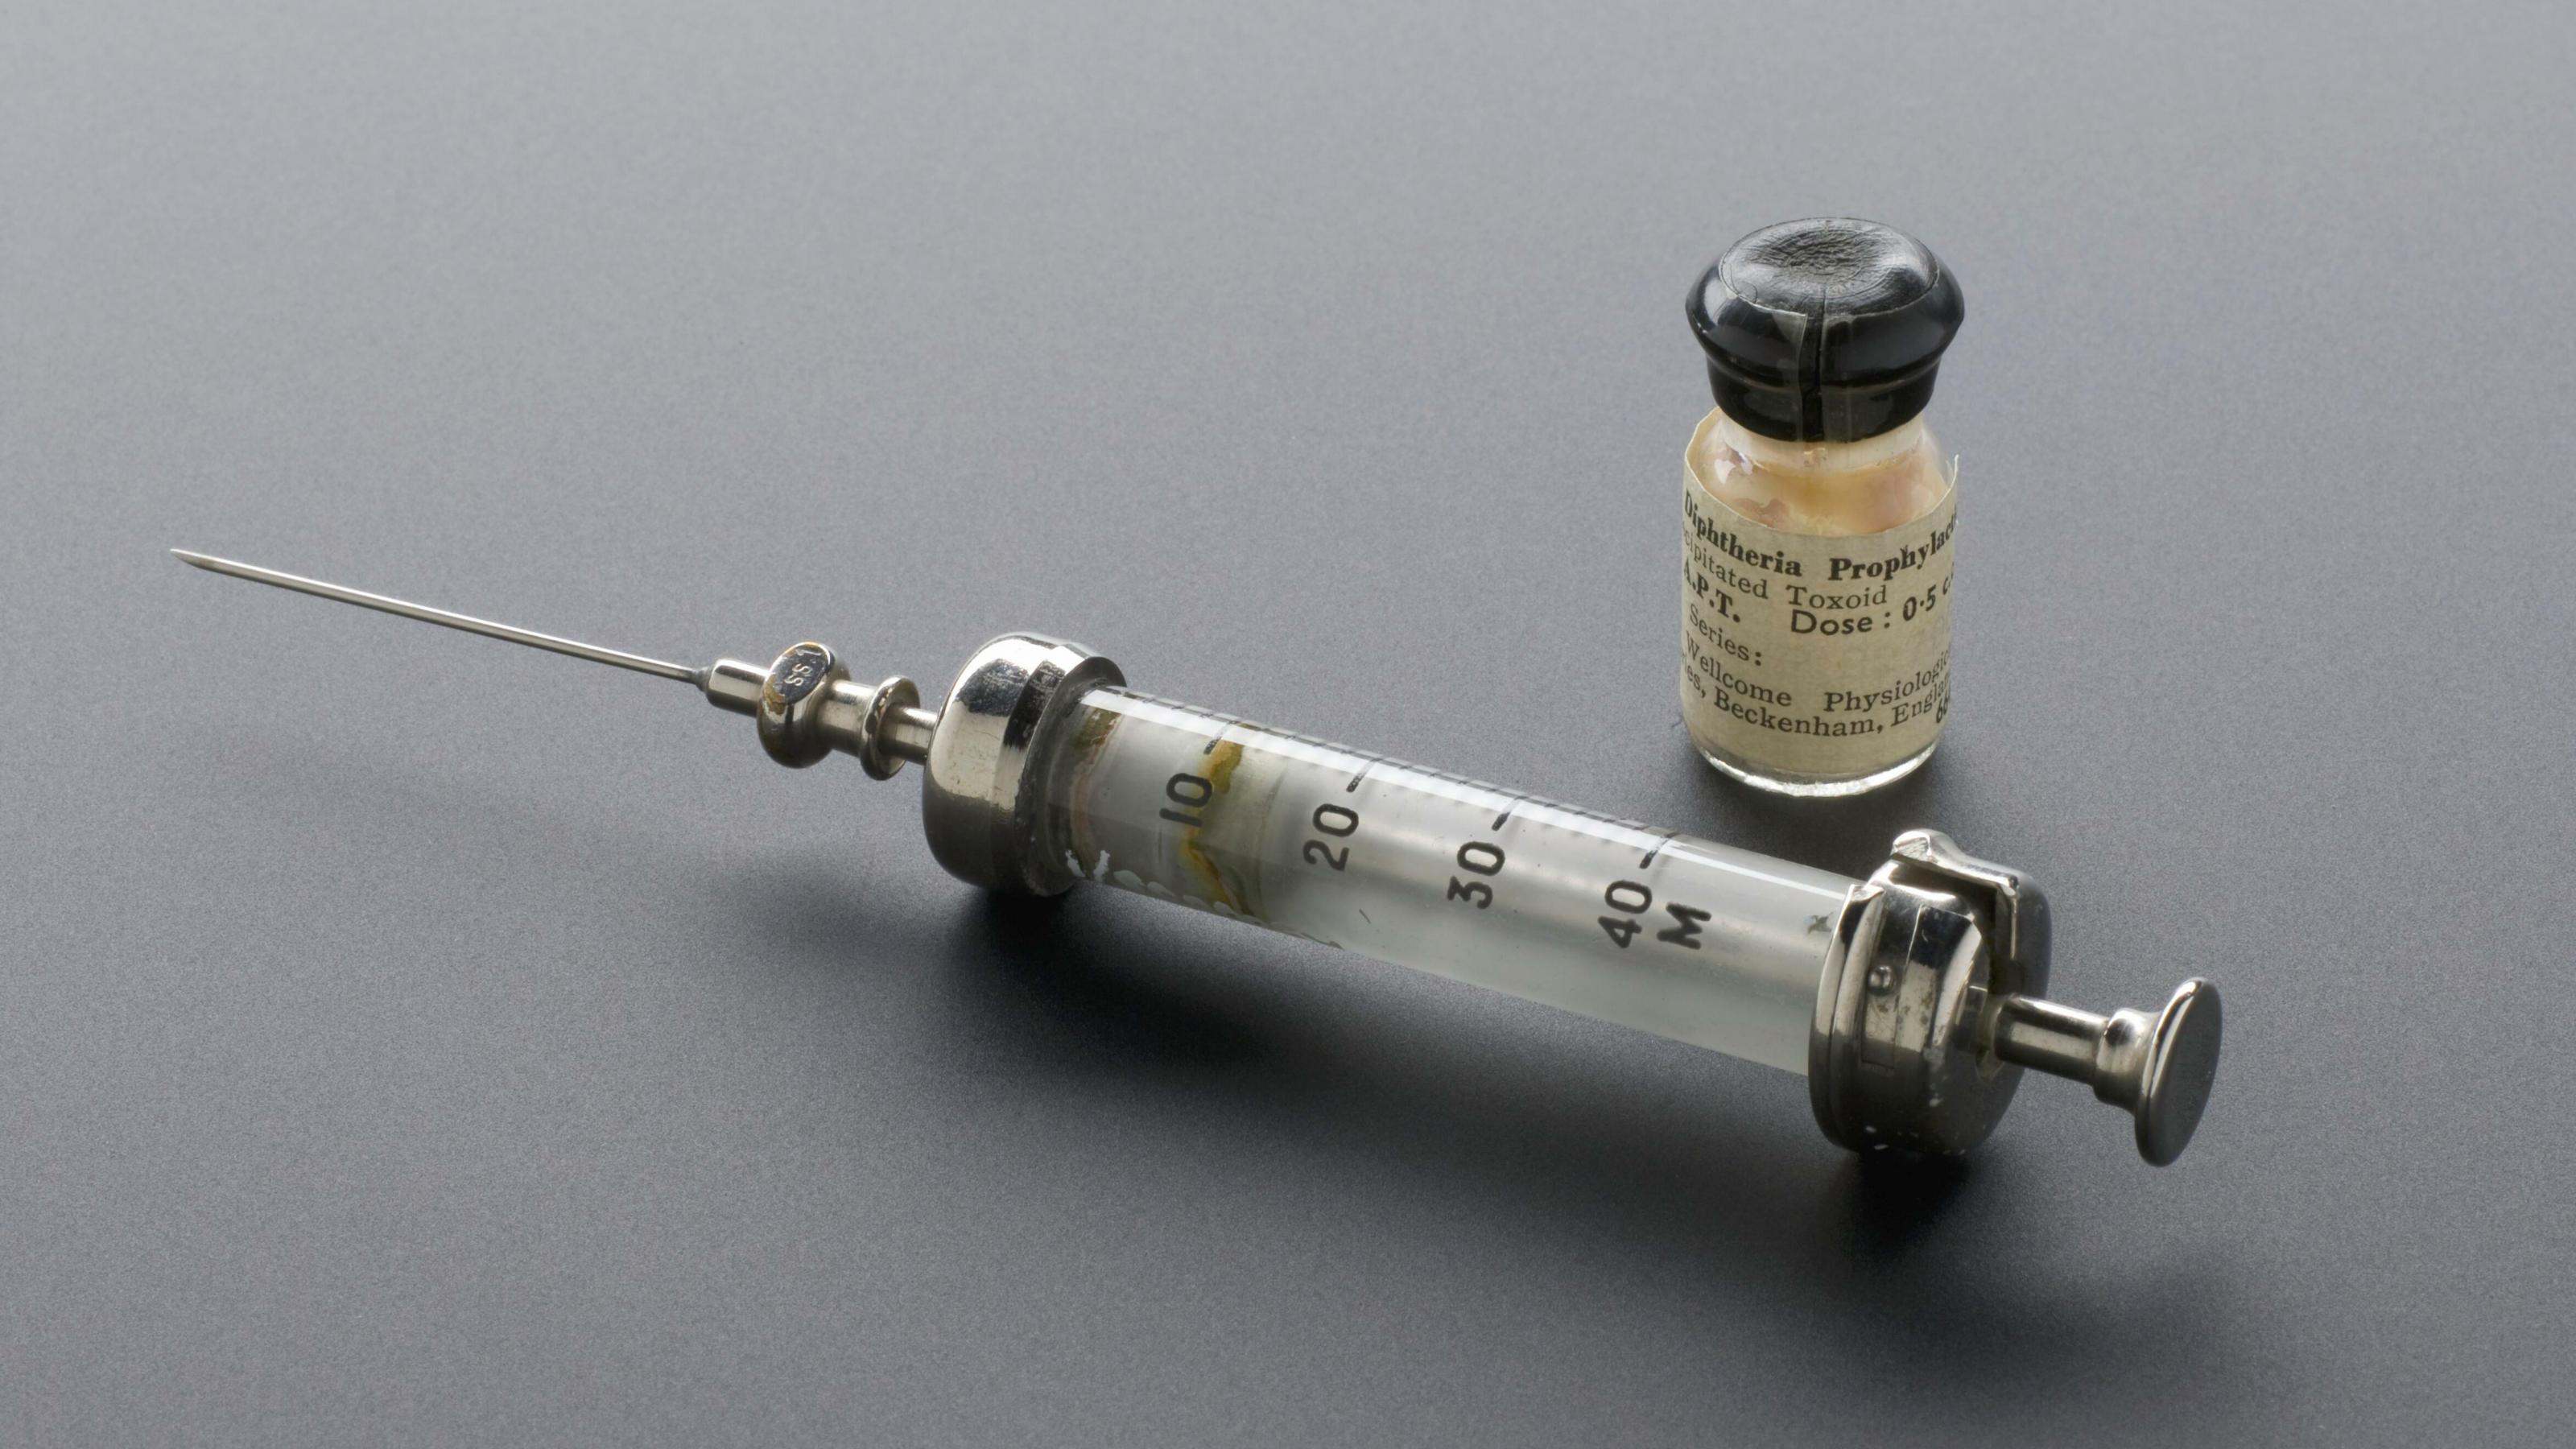 Auf dem Bild ist eine historische Impfspritze und ein kleines Fläschchen mit Diphtherie-Impfstoff zu sehen.